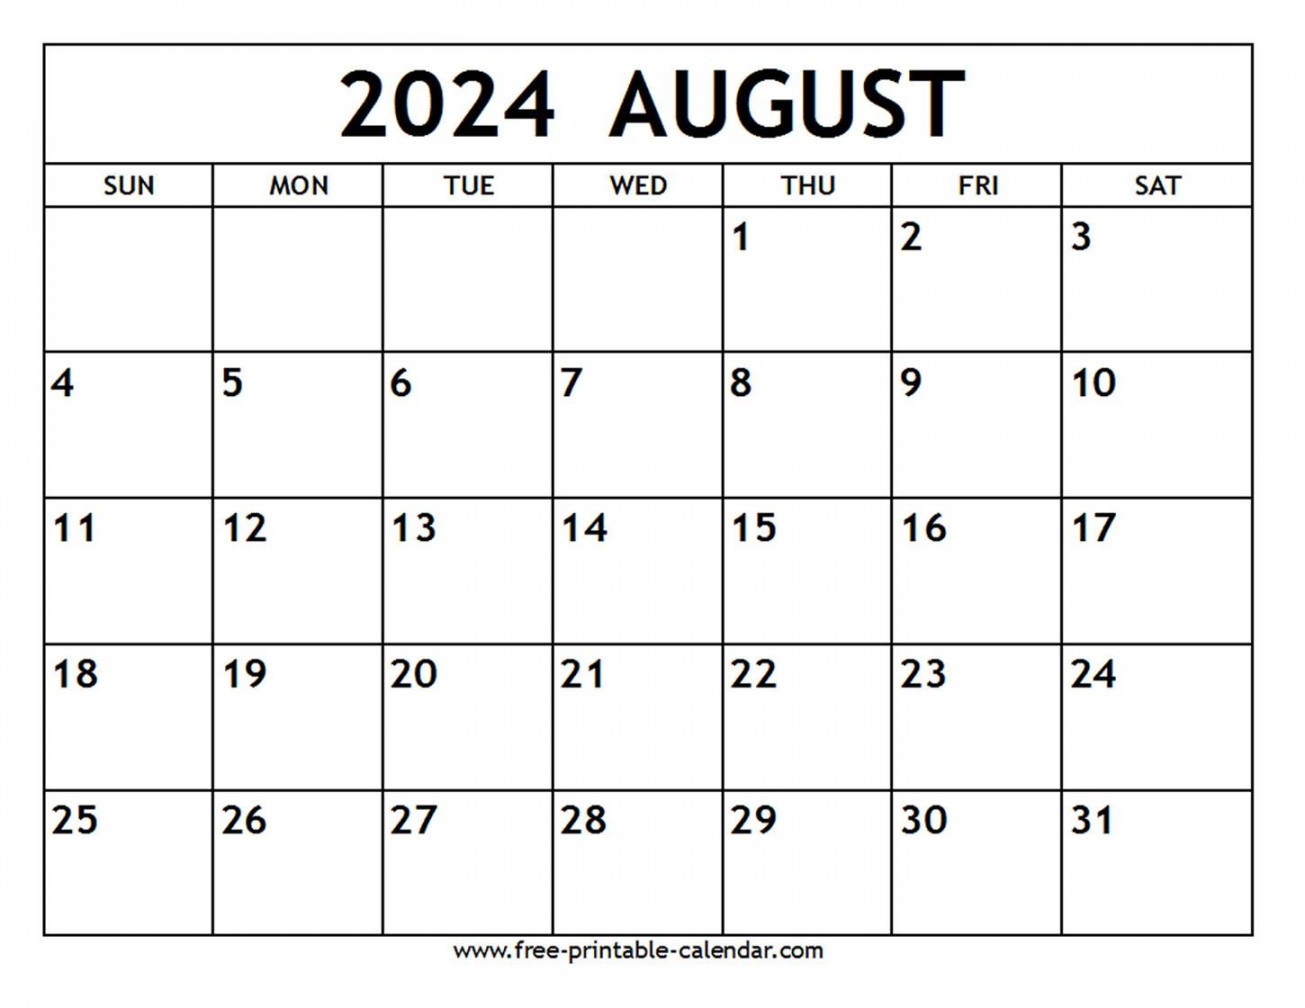 august calendar free printable calendar com